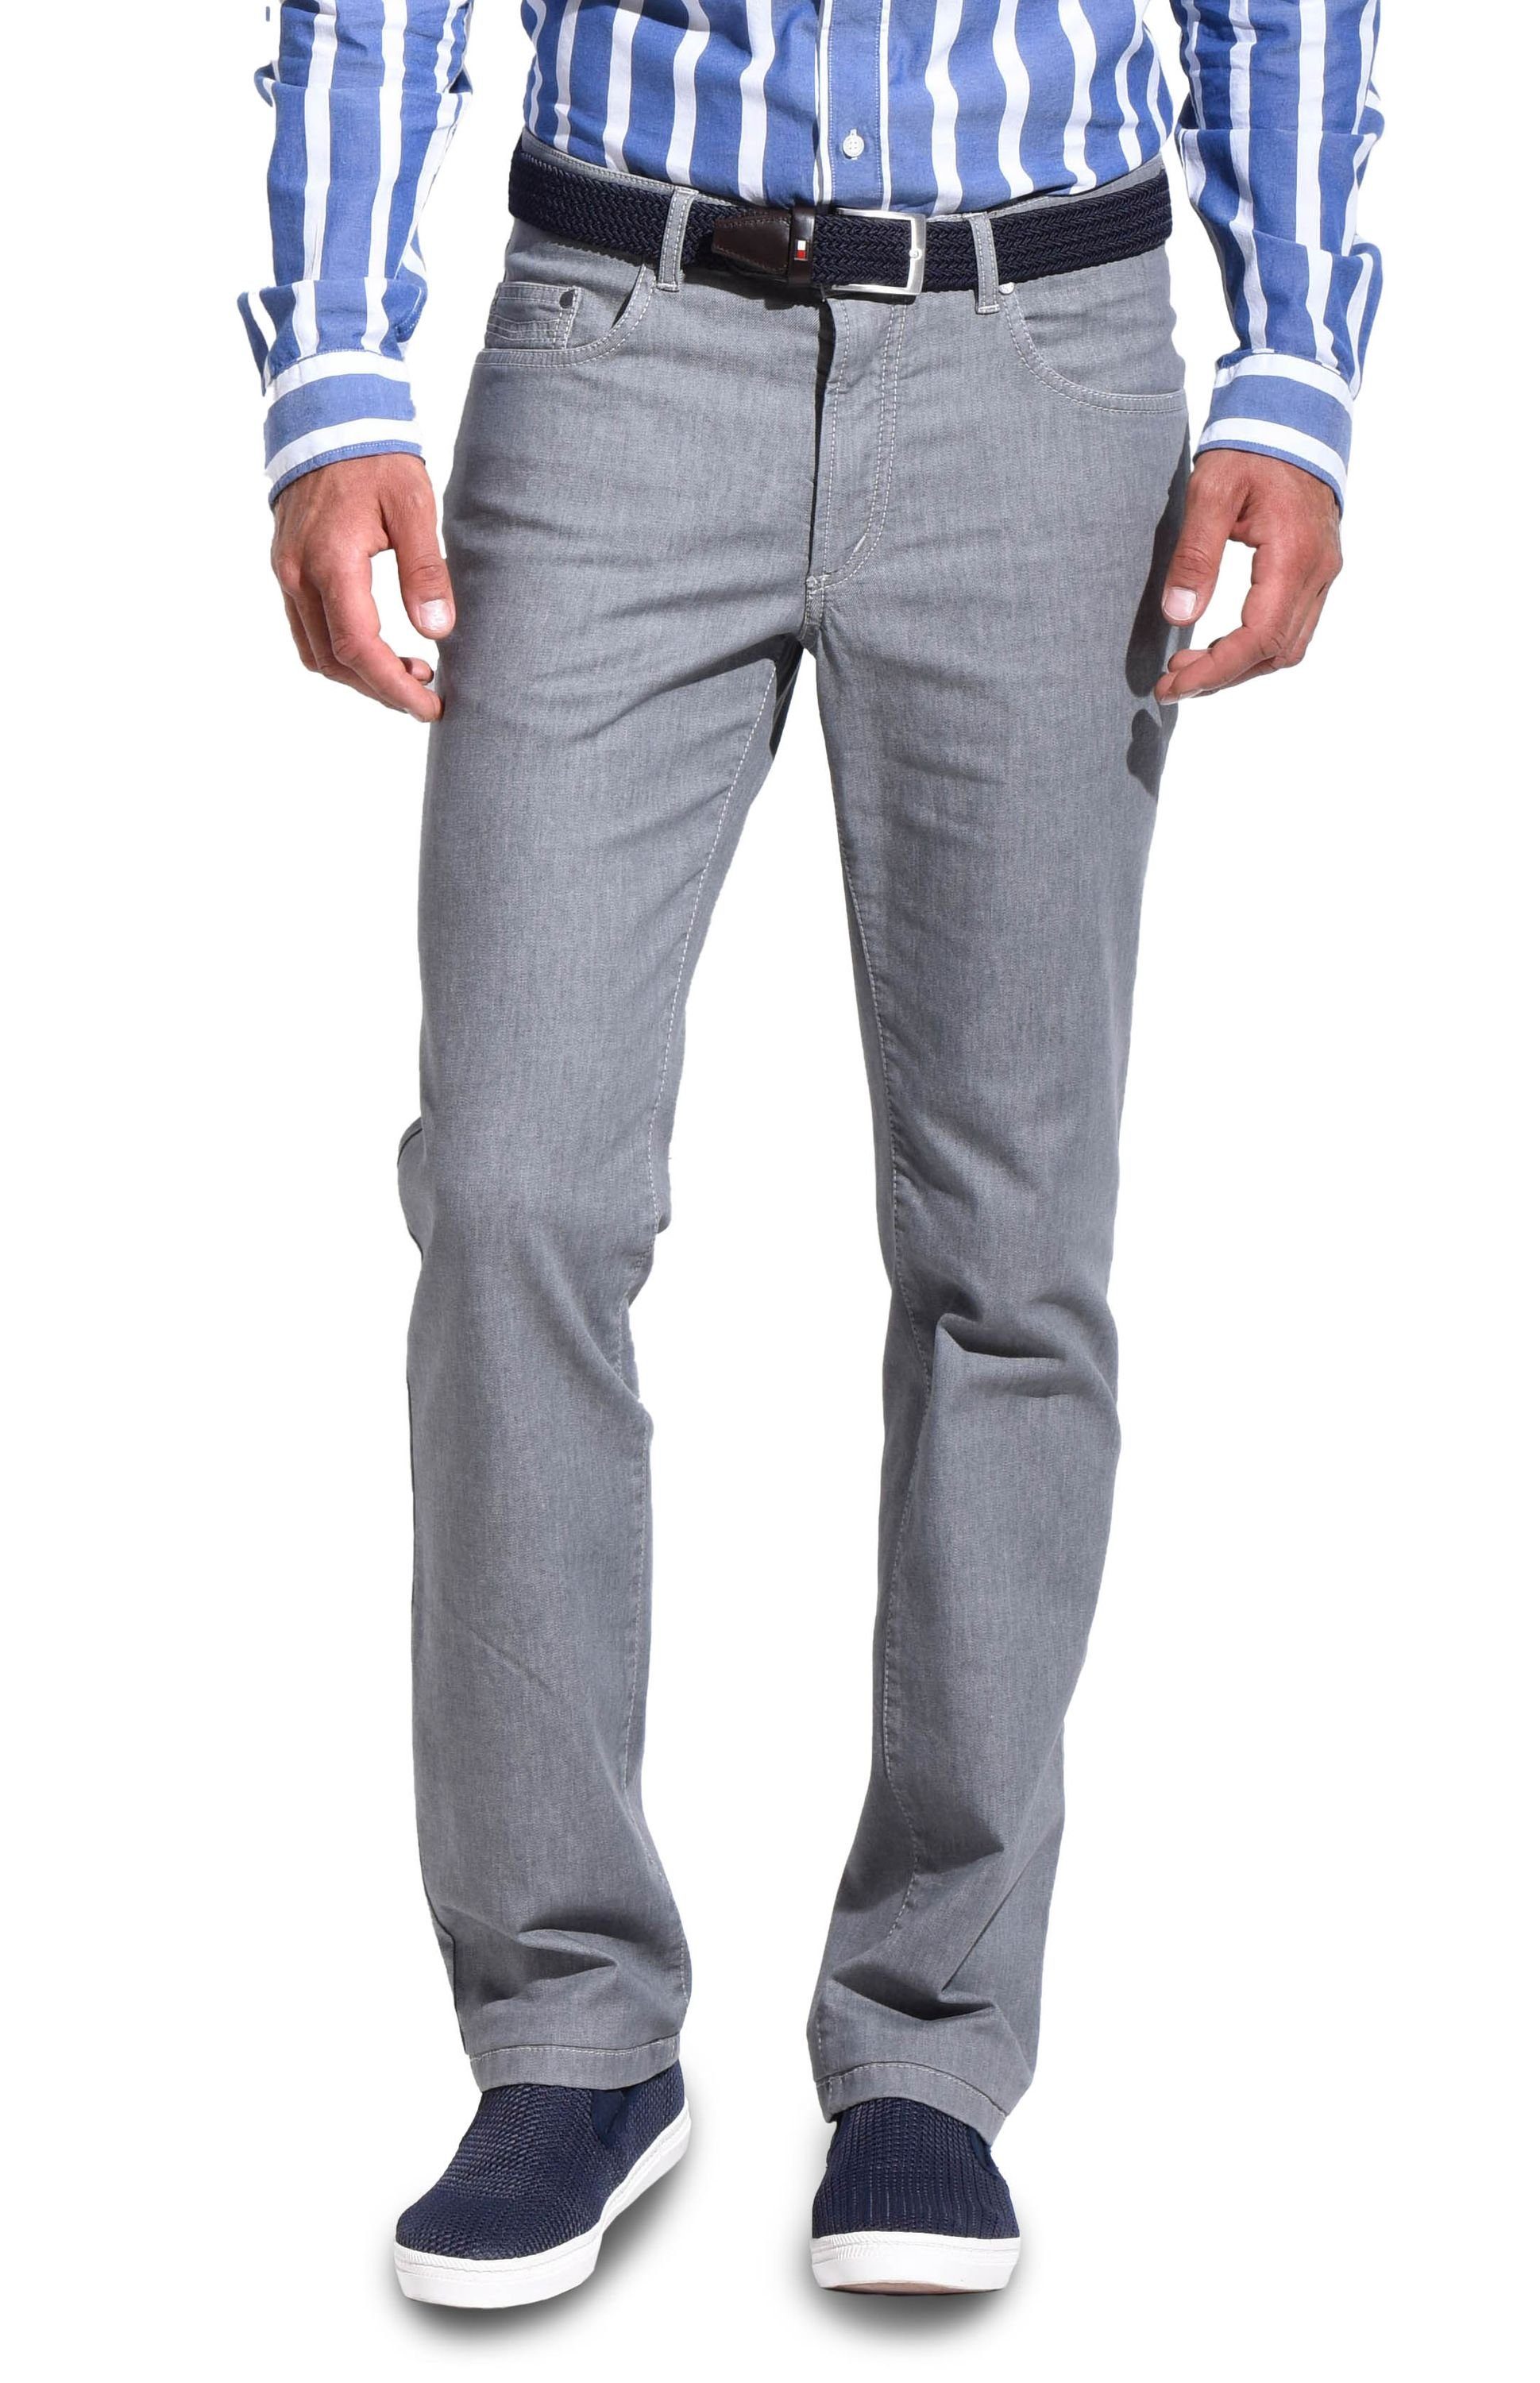 aubi: Bequeme Jeans aubi Perfect Fit Herren Sommer Jeans Hose Stretch aus Baumwolle High Flex Modell 577 grey (56)